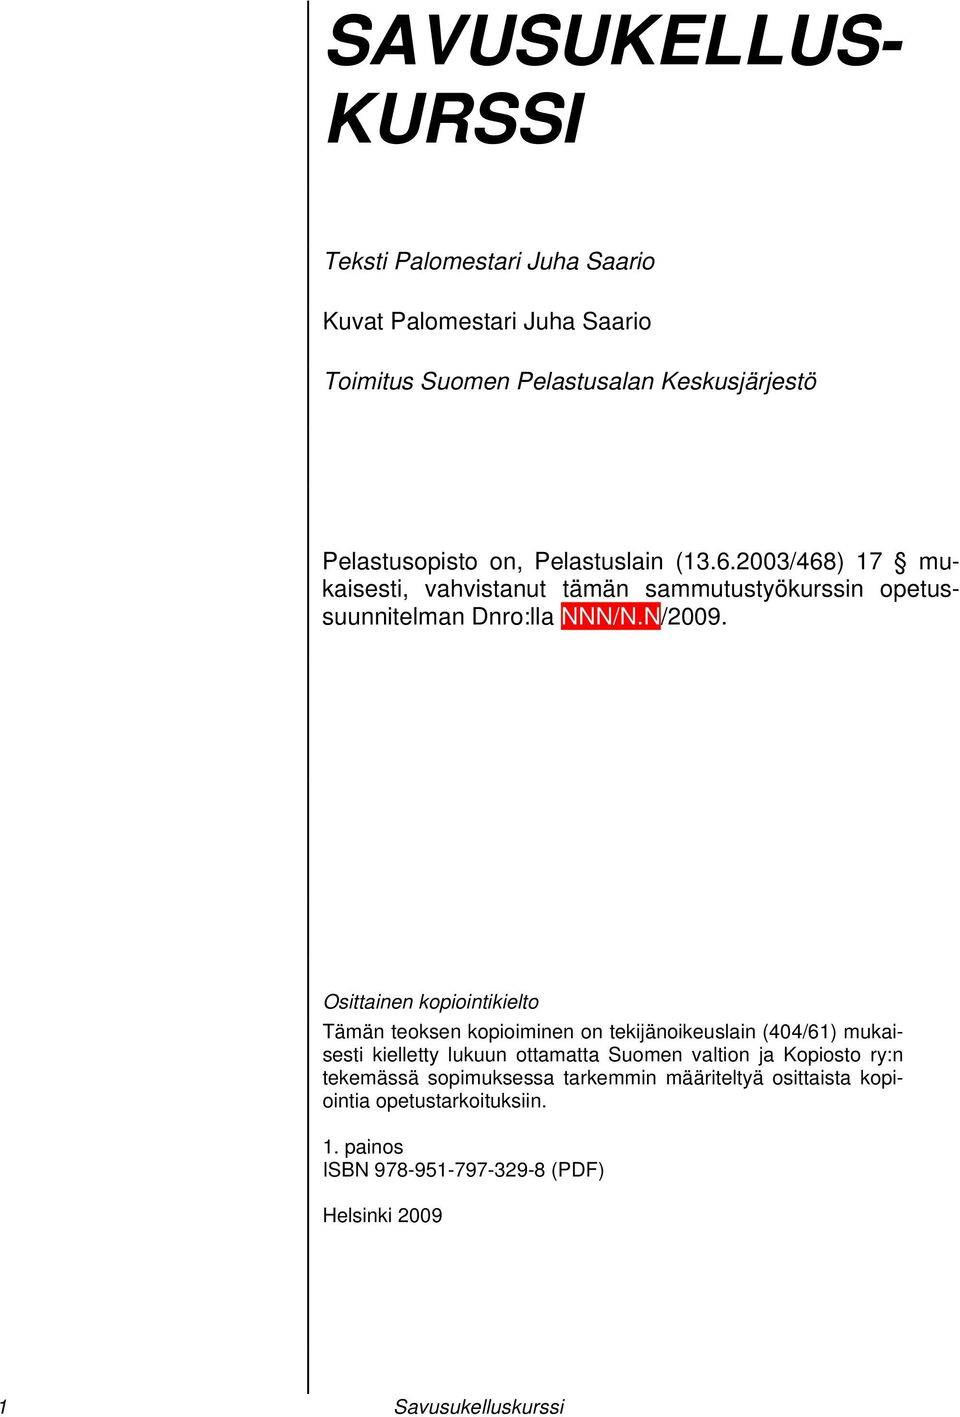 Osittainen kopiointikielto Tämän teoksen kopioiminen on tekijänoikeuslain (404/61) mukaisesti kielletty lukuun ottamatta Suomen valtion ja